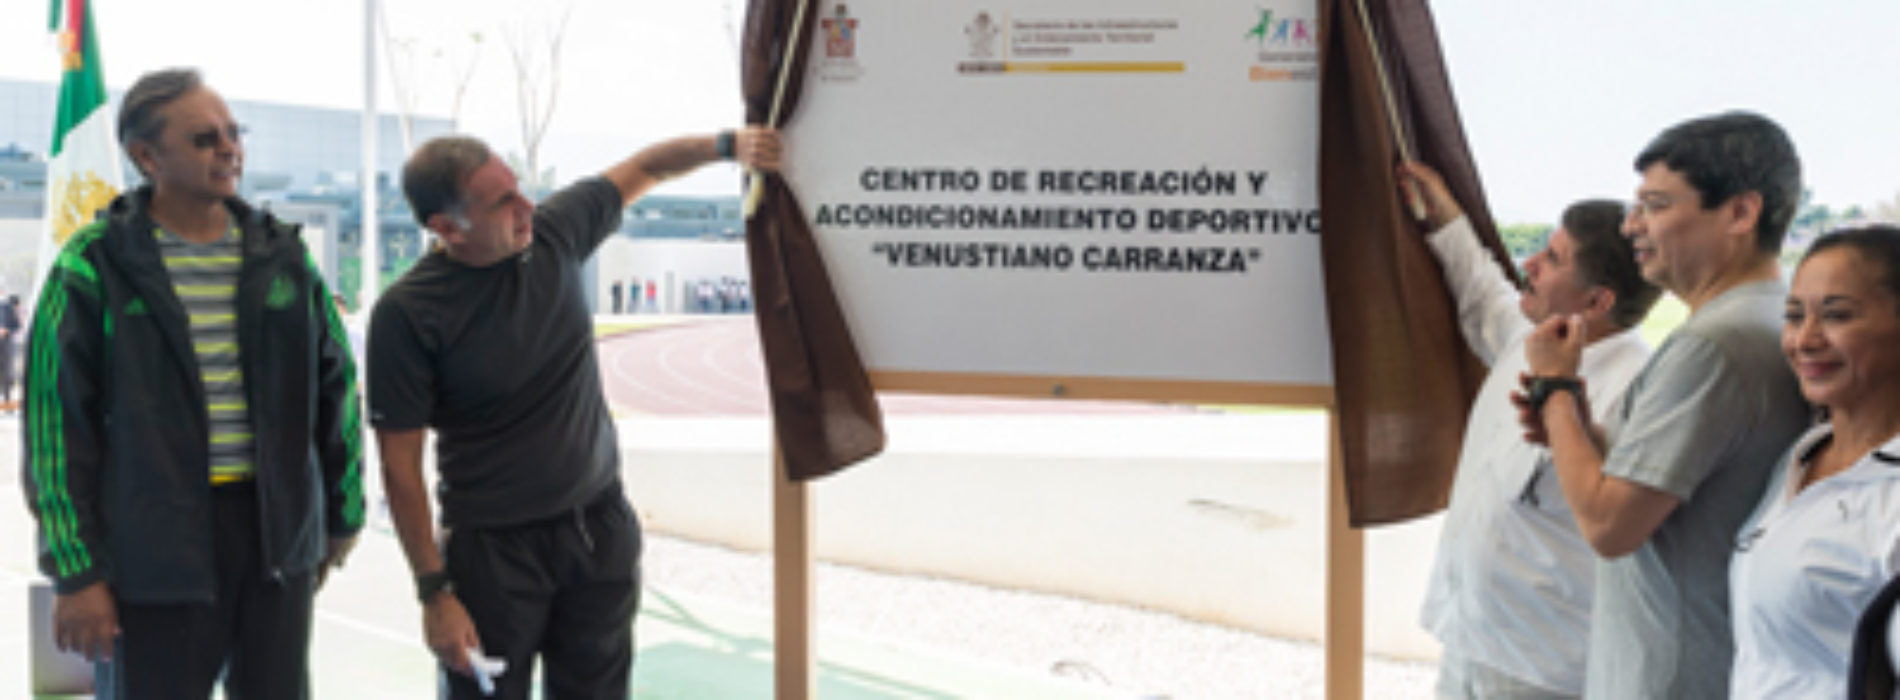 Gabino Cué inaugura Polideportivo “Venustiano Carranza” con una inversión de 382 MDP